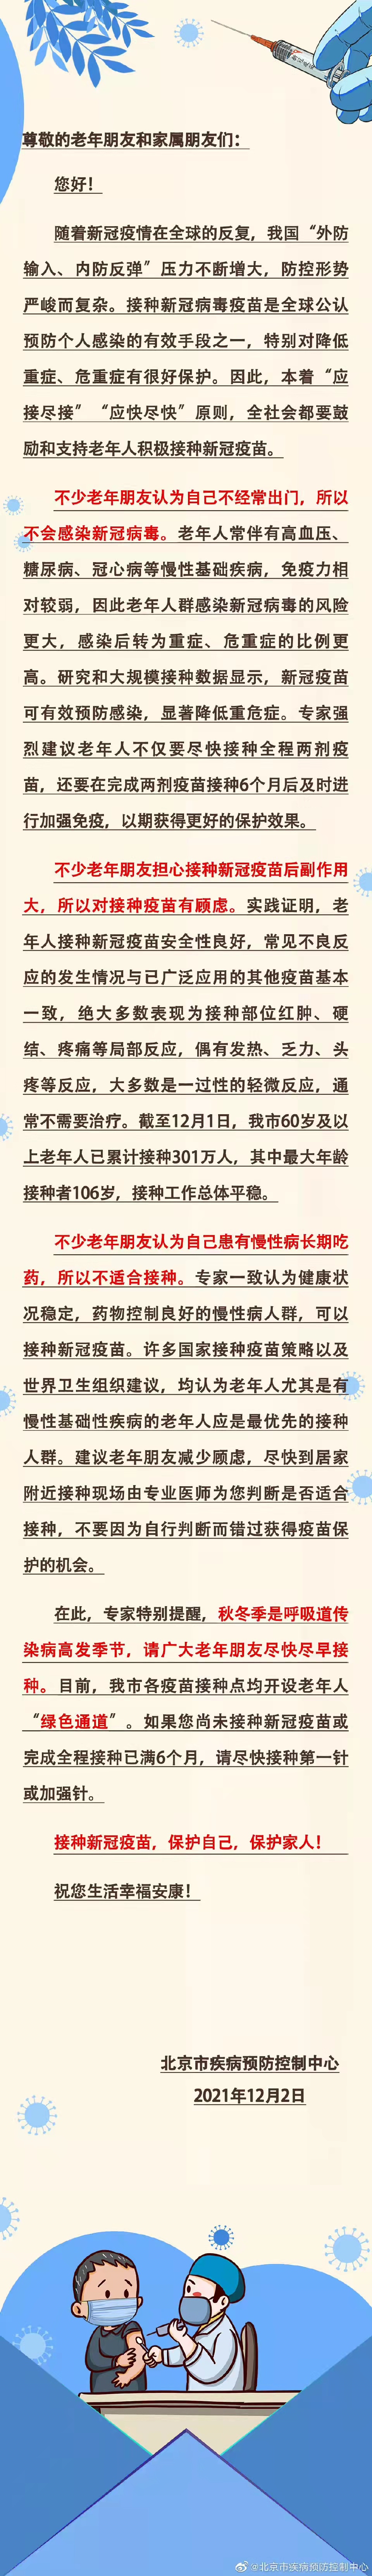 国家消防工程师报名官网墙壁北京市老年无比家属一封信600742一汽四环